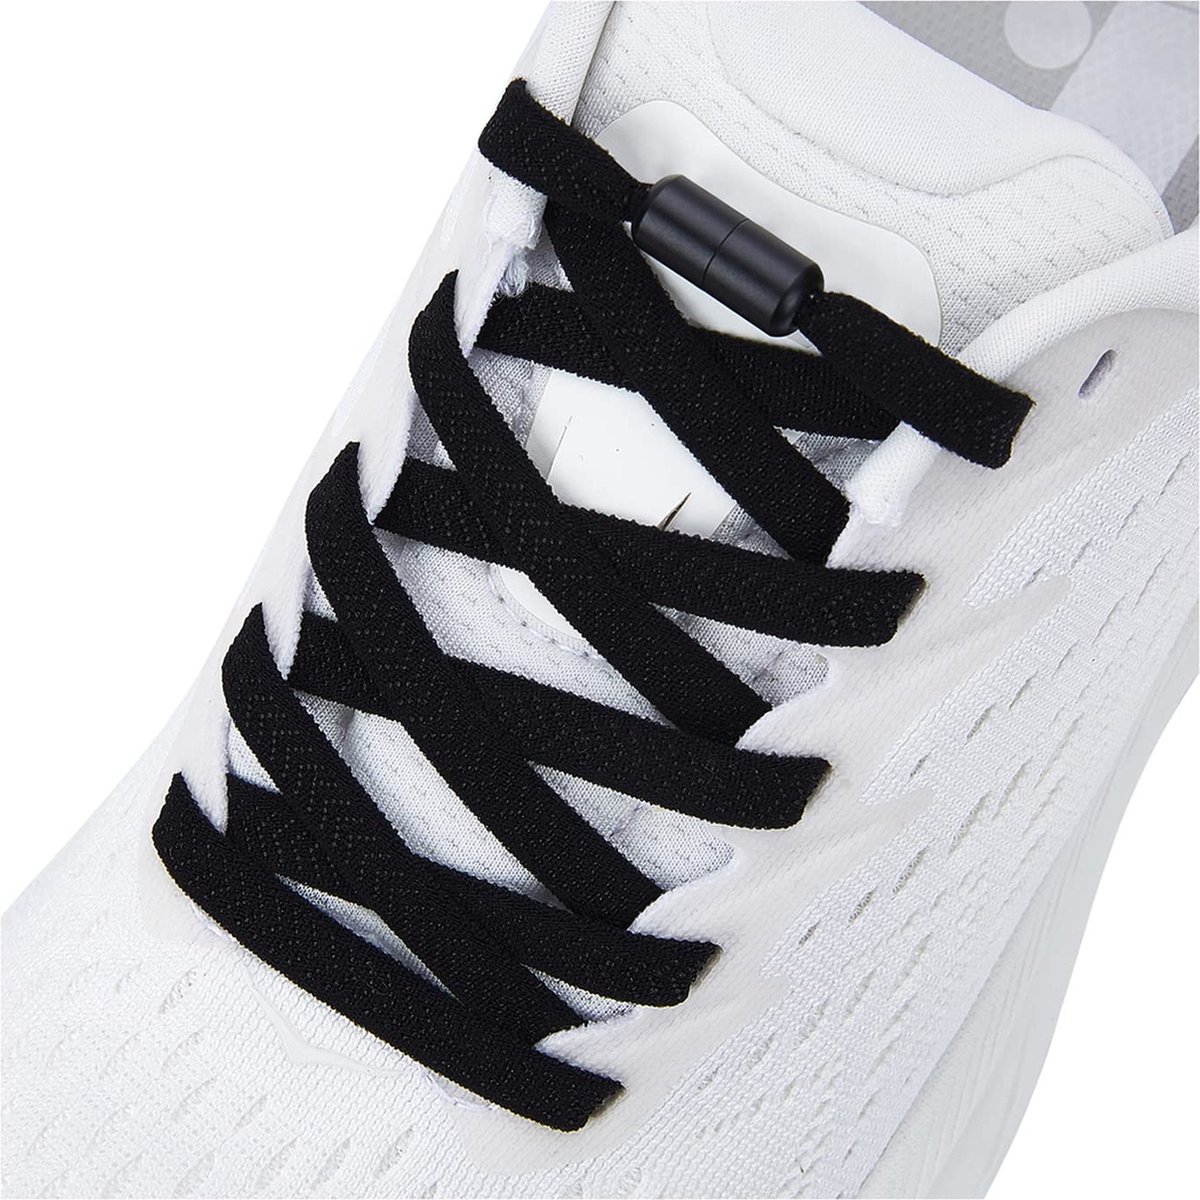 Lace Force® Elastische veters zonder strikken - Zwart met zwarte clips - schoenveters - Lace Force